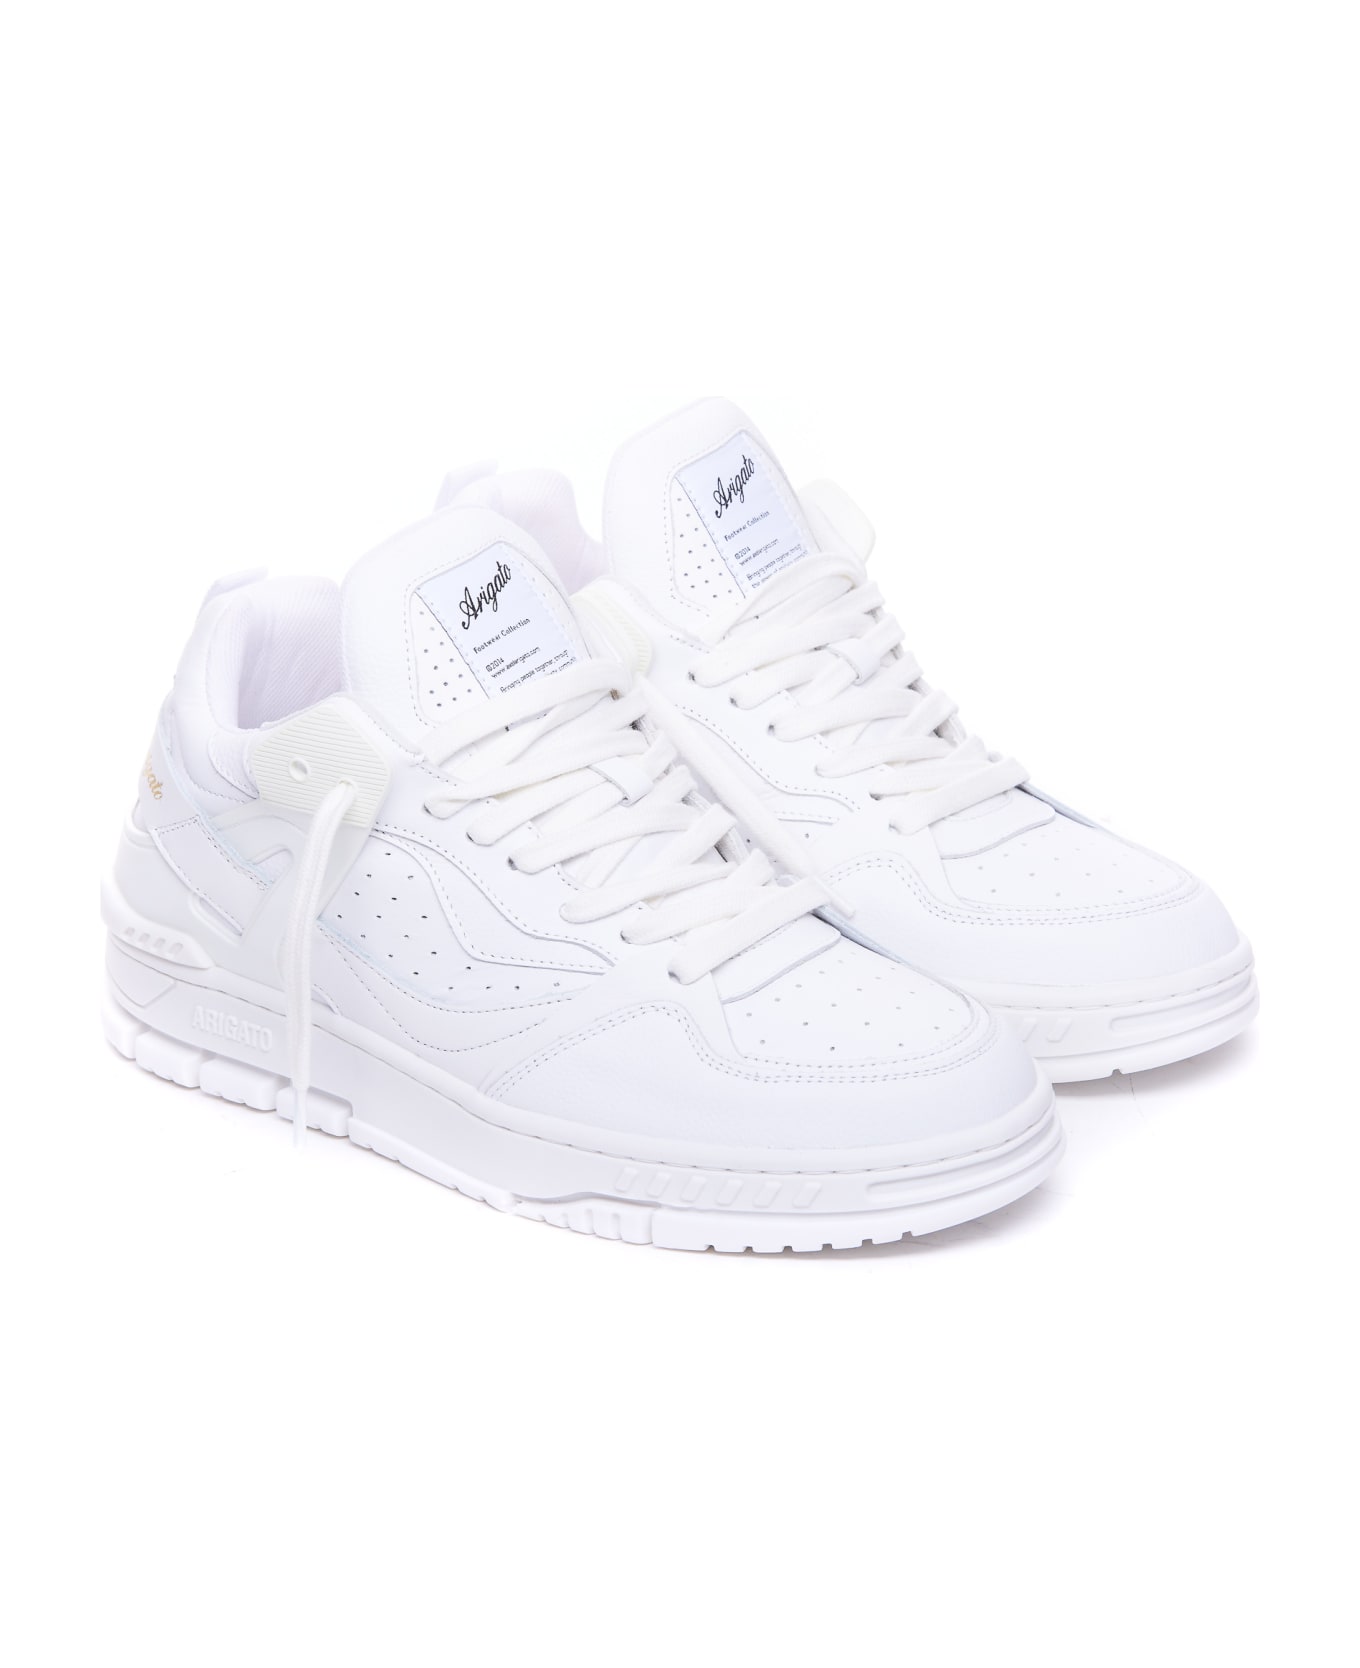 Axel Arigato Astro Sneakers - White